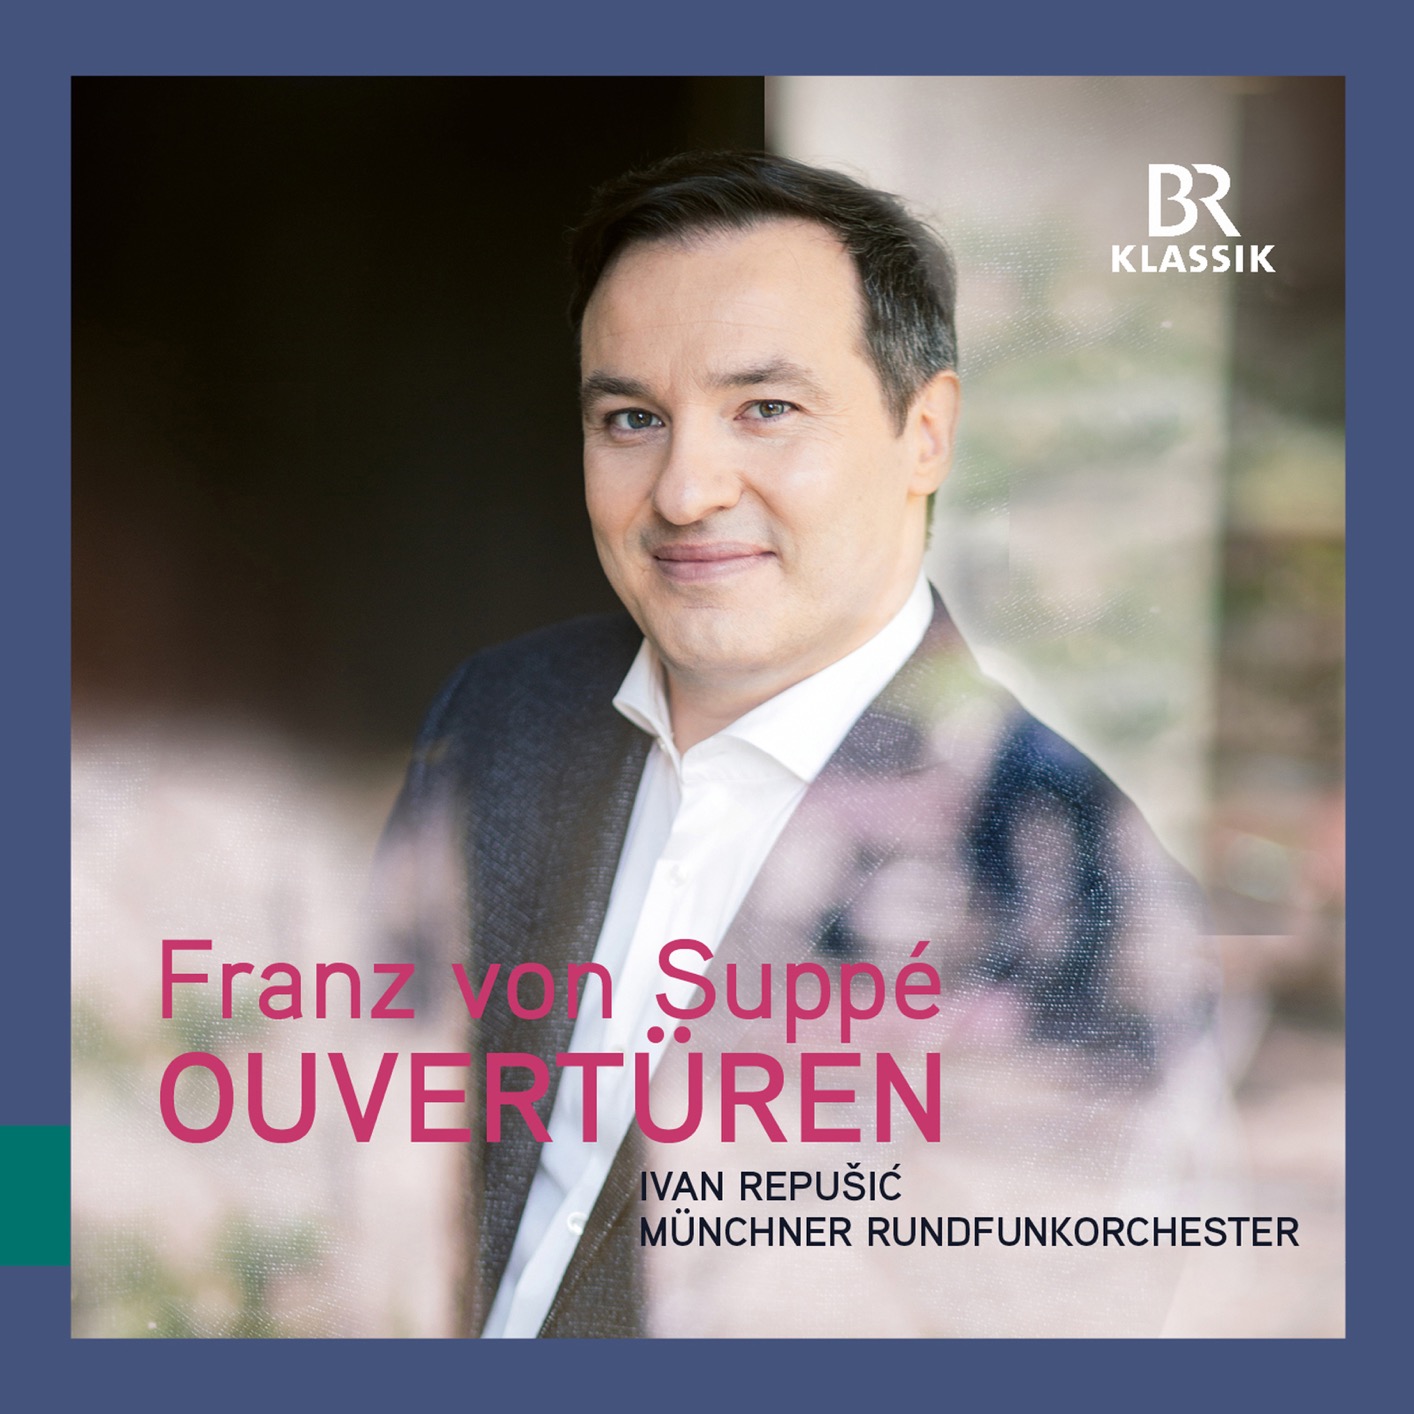 Munchner Rundfunkorchester & Ivan Repusic - Suppe: Overtures (2018) [FLAC 24bit/48kHz]